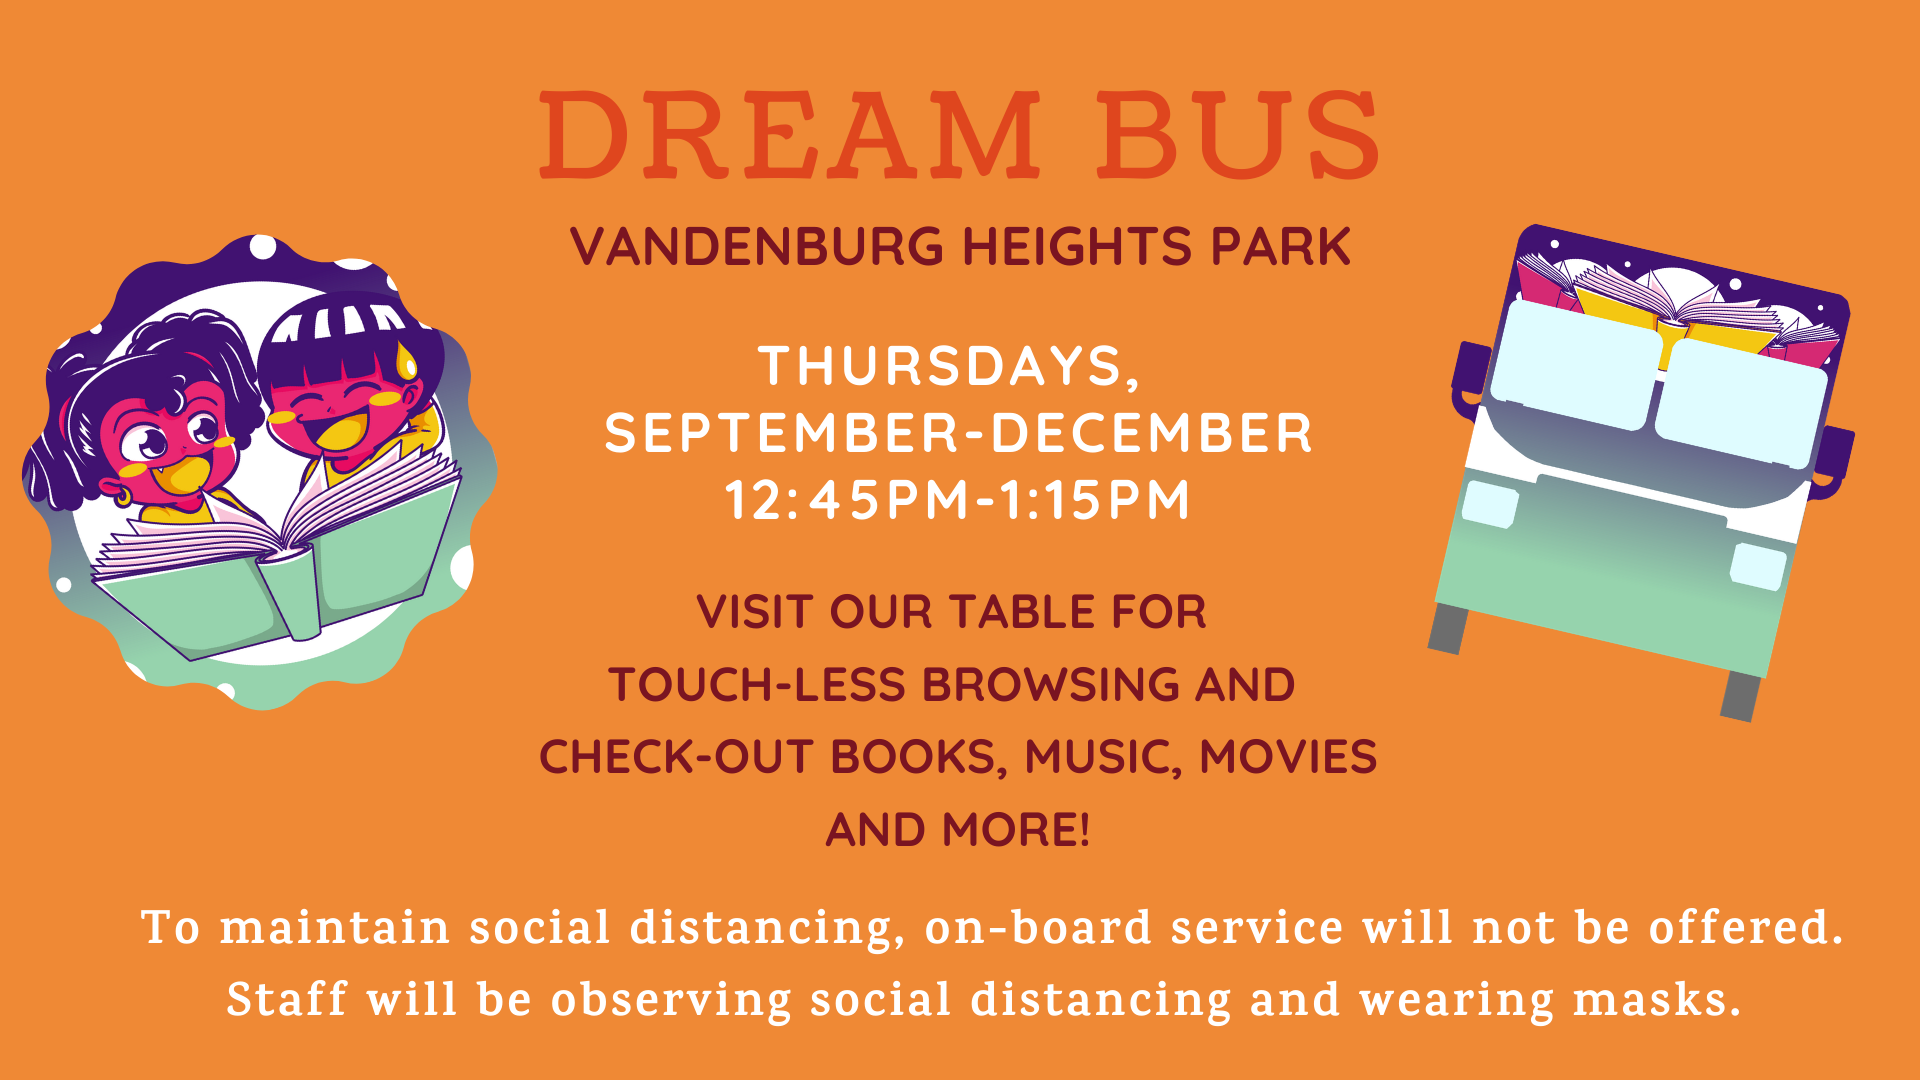 Dream Bus Vandenburg Heights Thursdays September-December